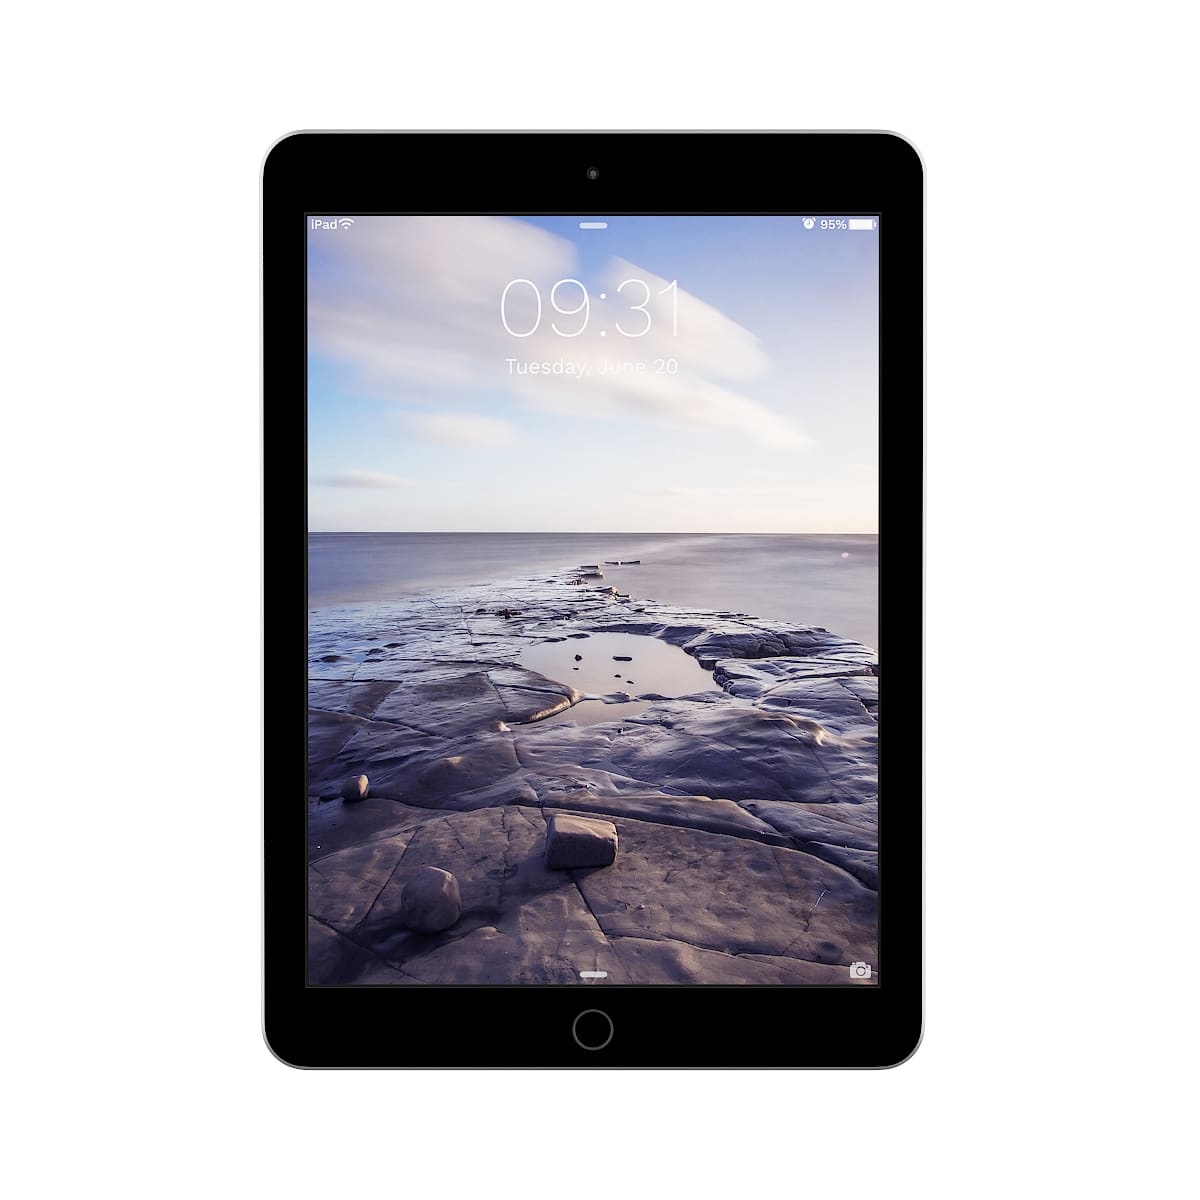  Apple iPad Pro tableta de 9.7 pulgadas (reacondicionamiento  certificado), Gris : Electrónica